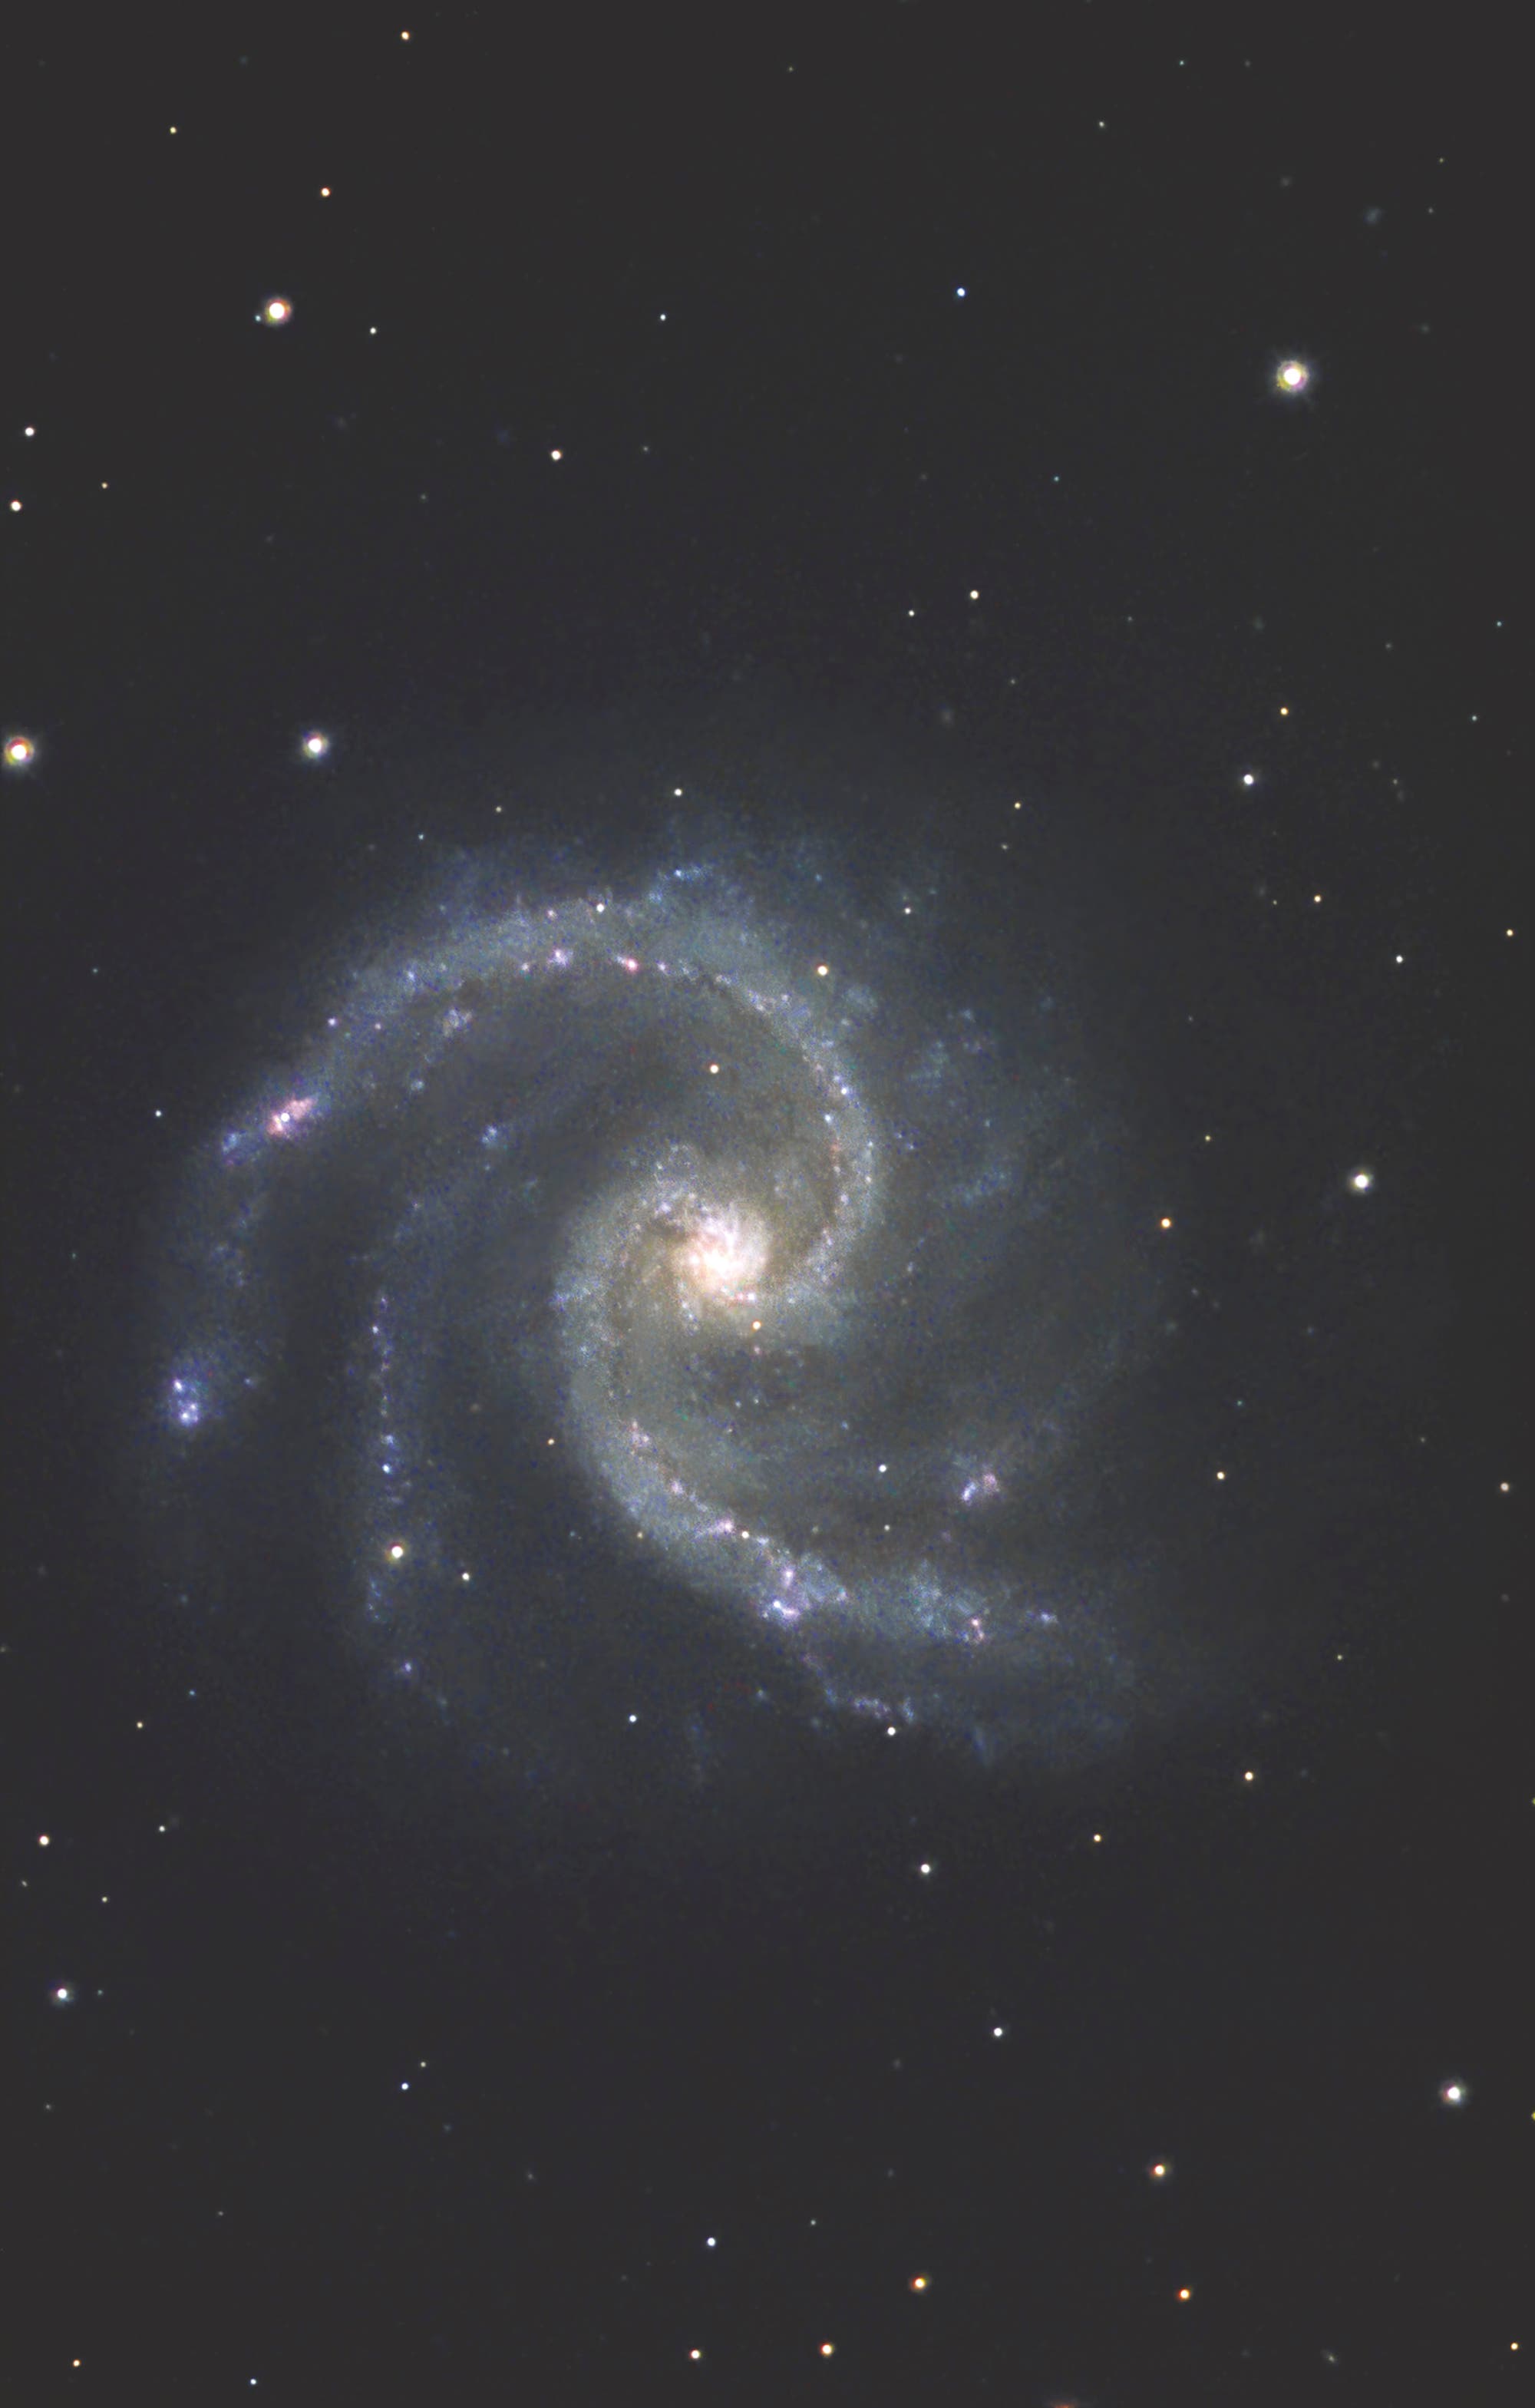 Die Spiralgalaxie NGC 5247 im Sternbild Jungfrau